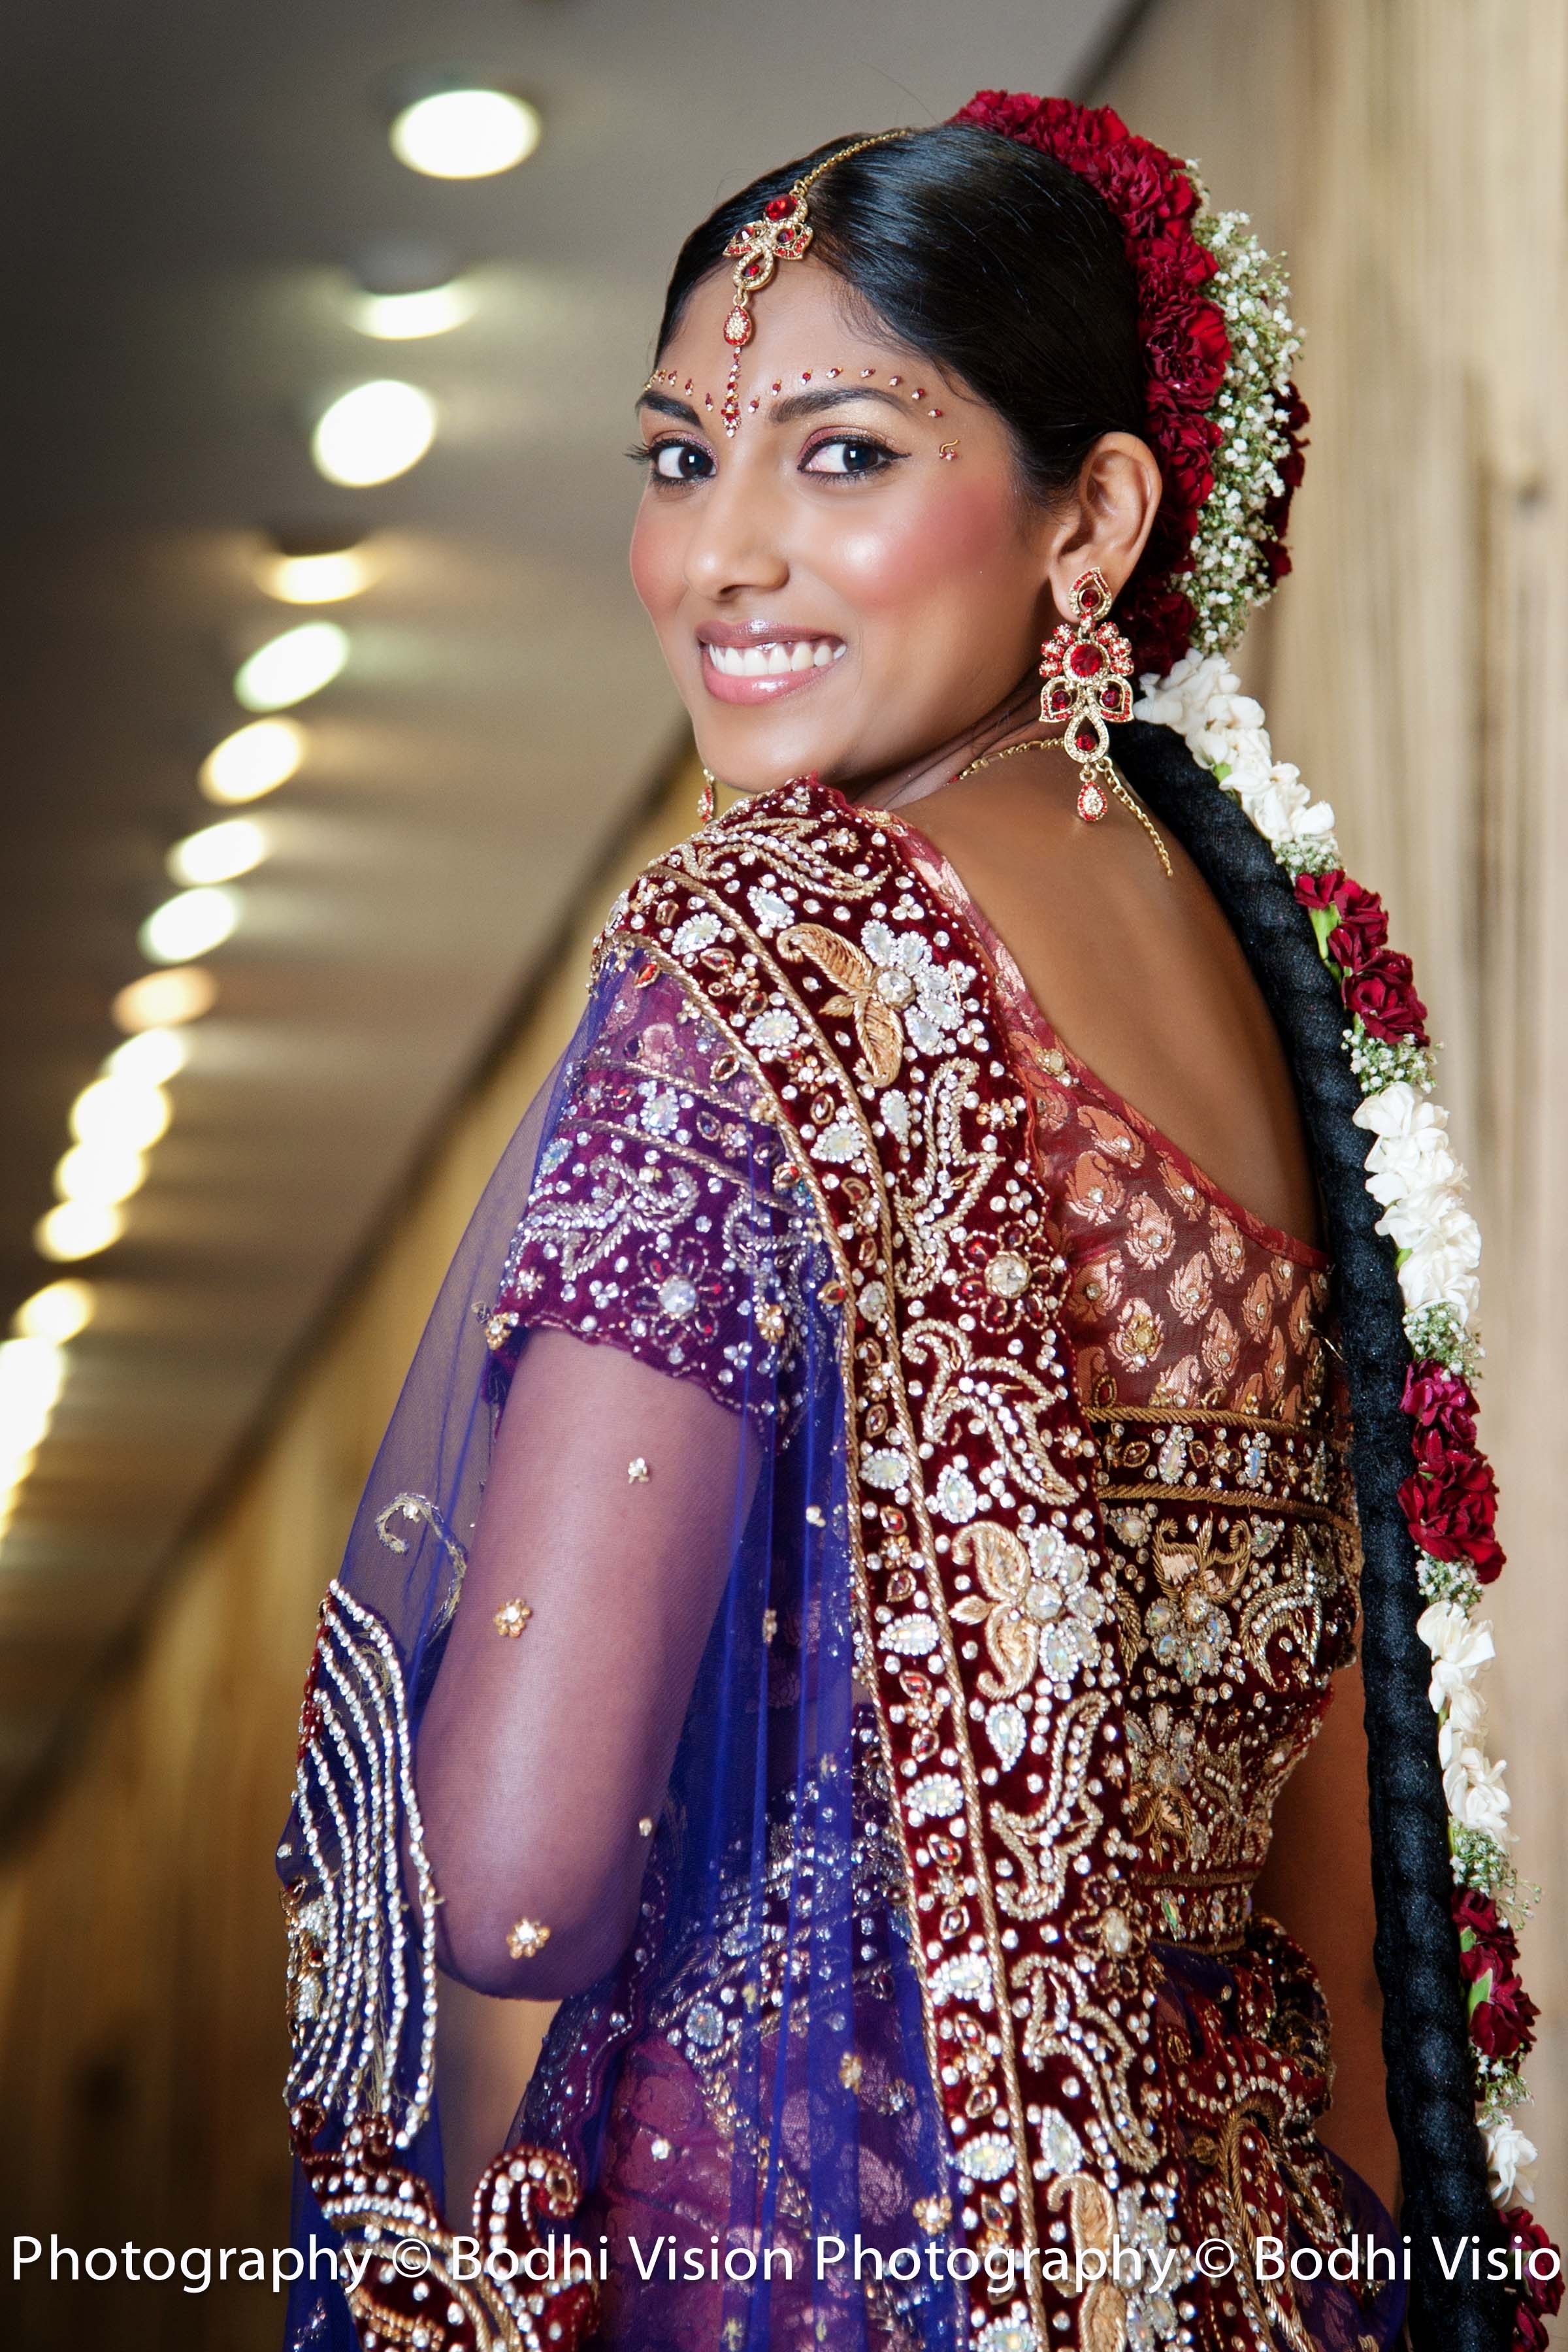 Indian Wedding Hair And Makeup Durban | Saubhaya Makeup regarding Indian Bridal Hair And Makeup Johannesburg